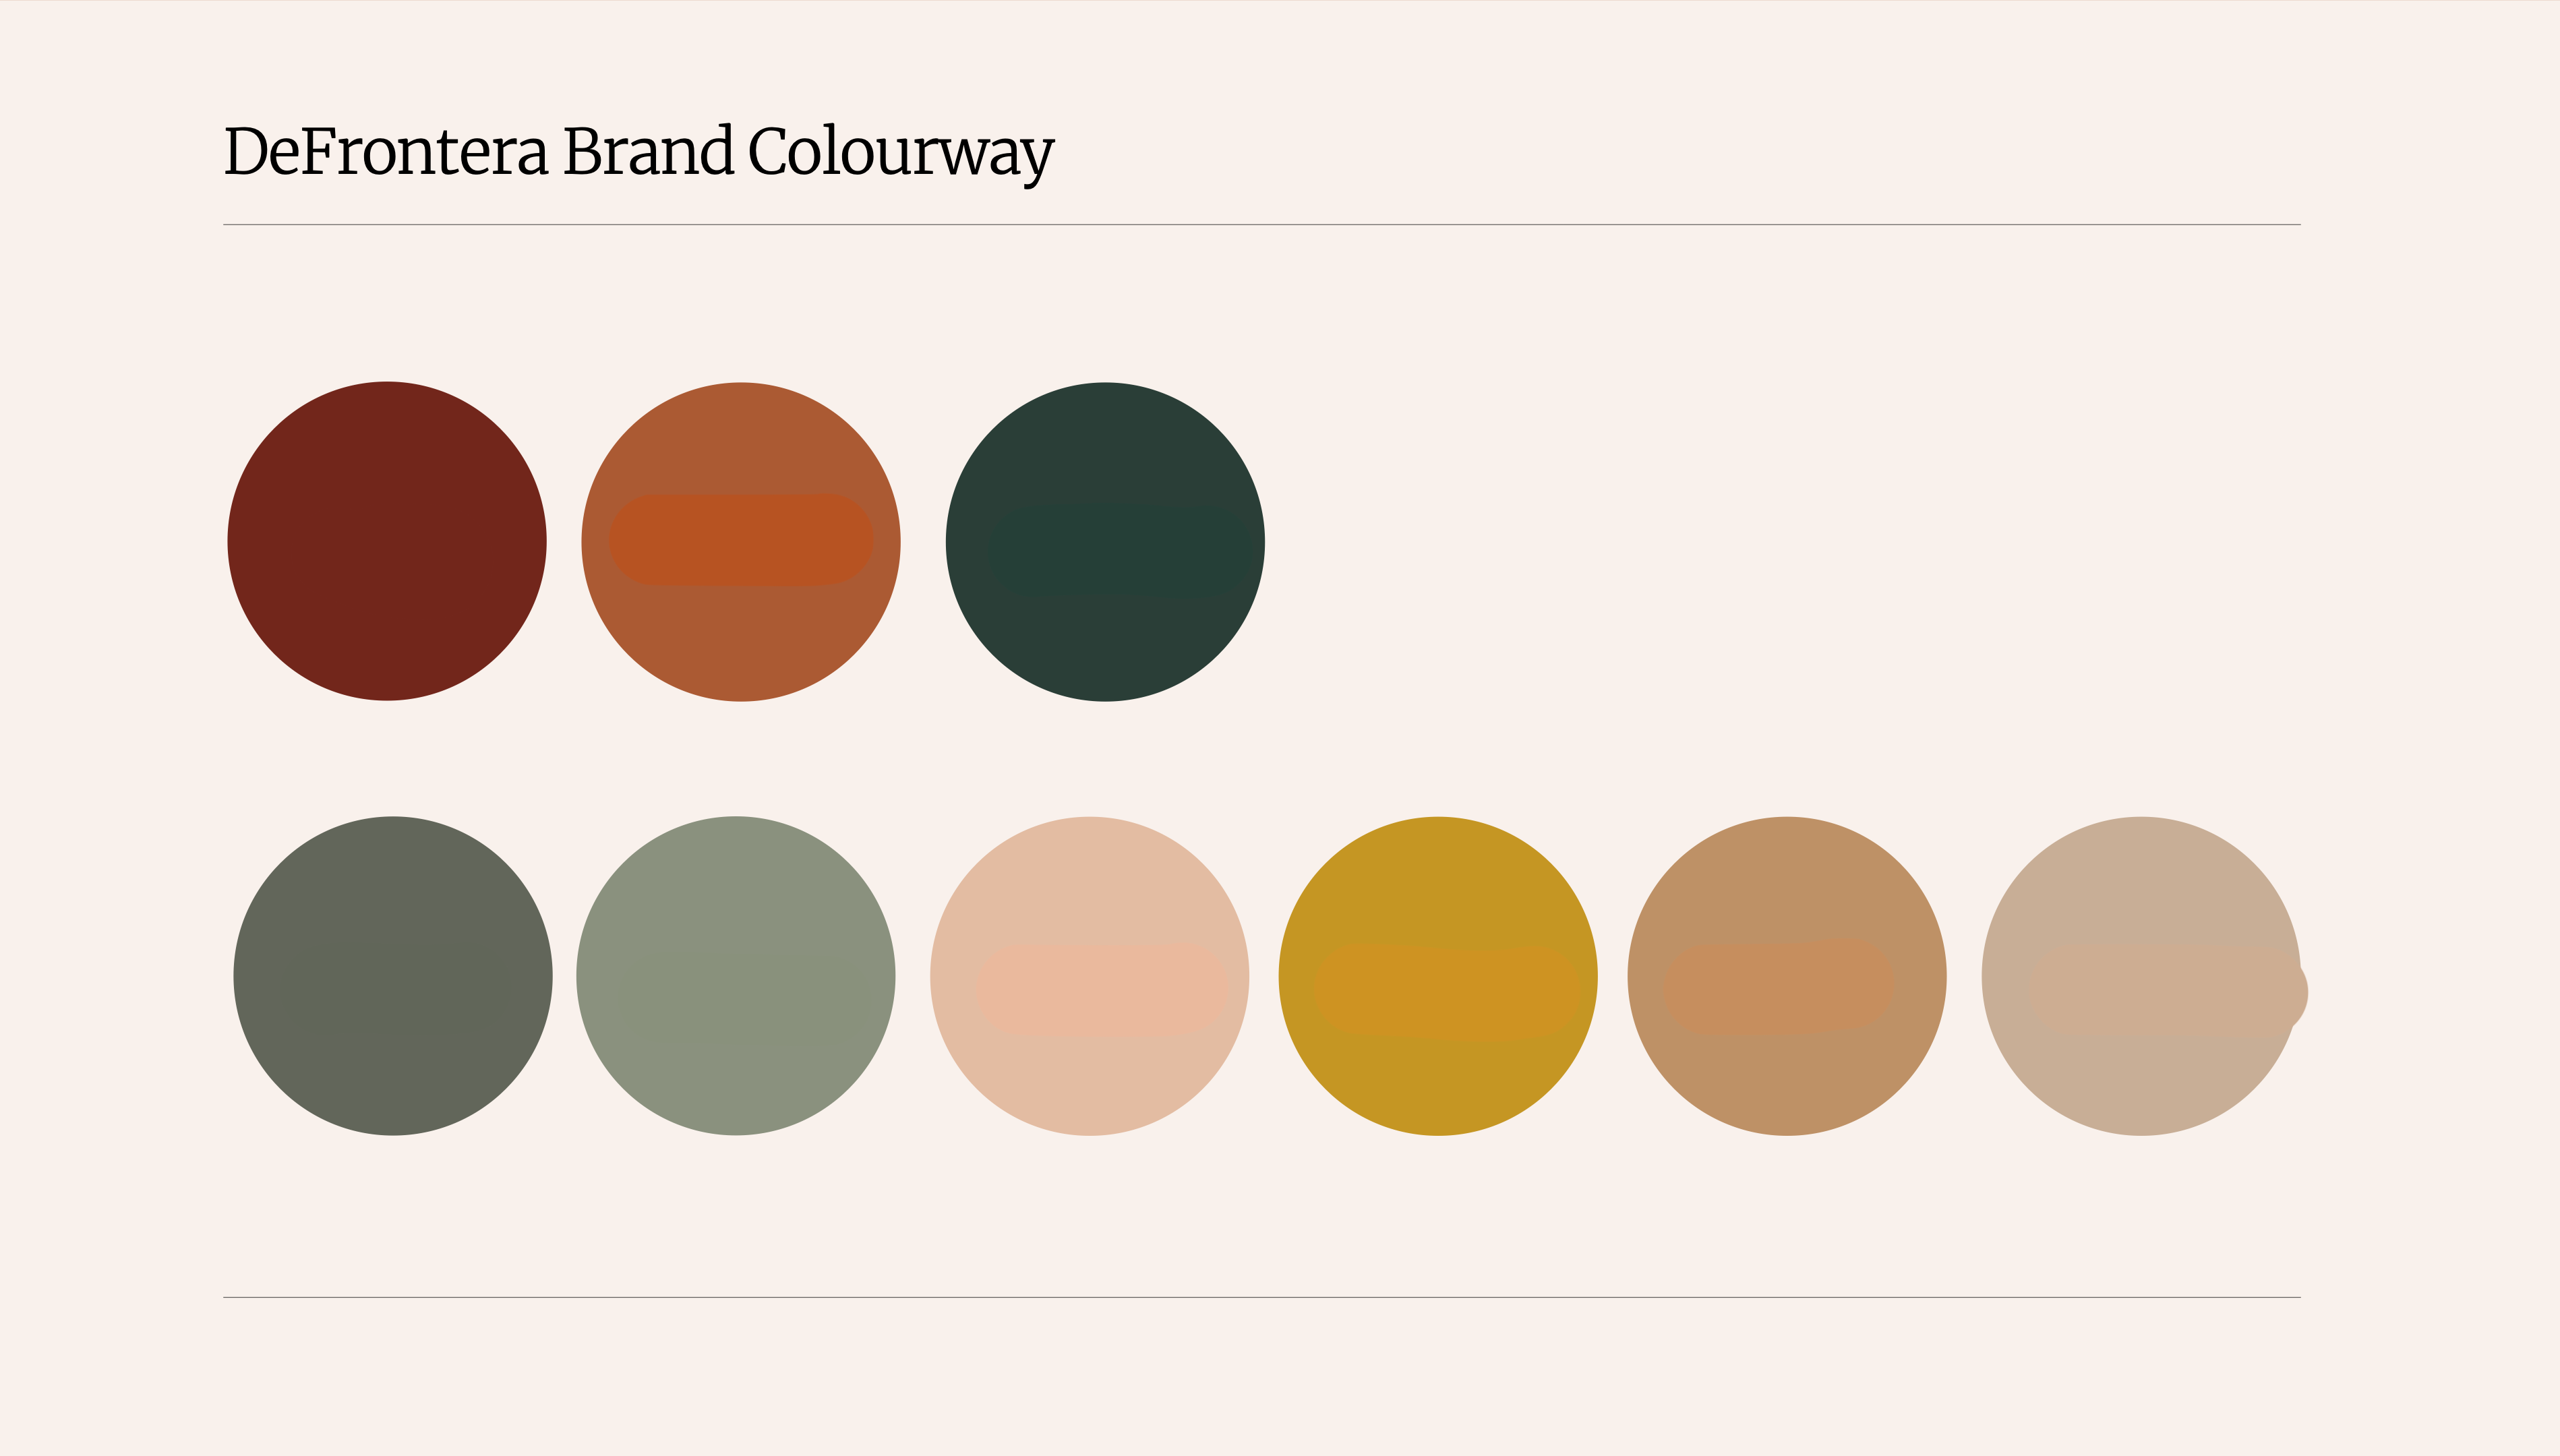 Brand colourways